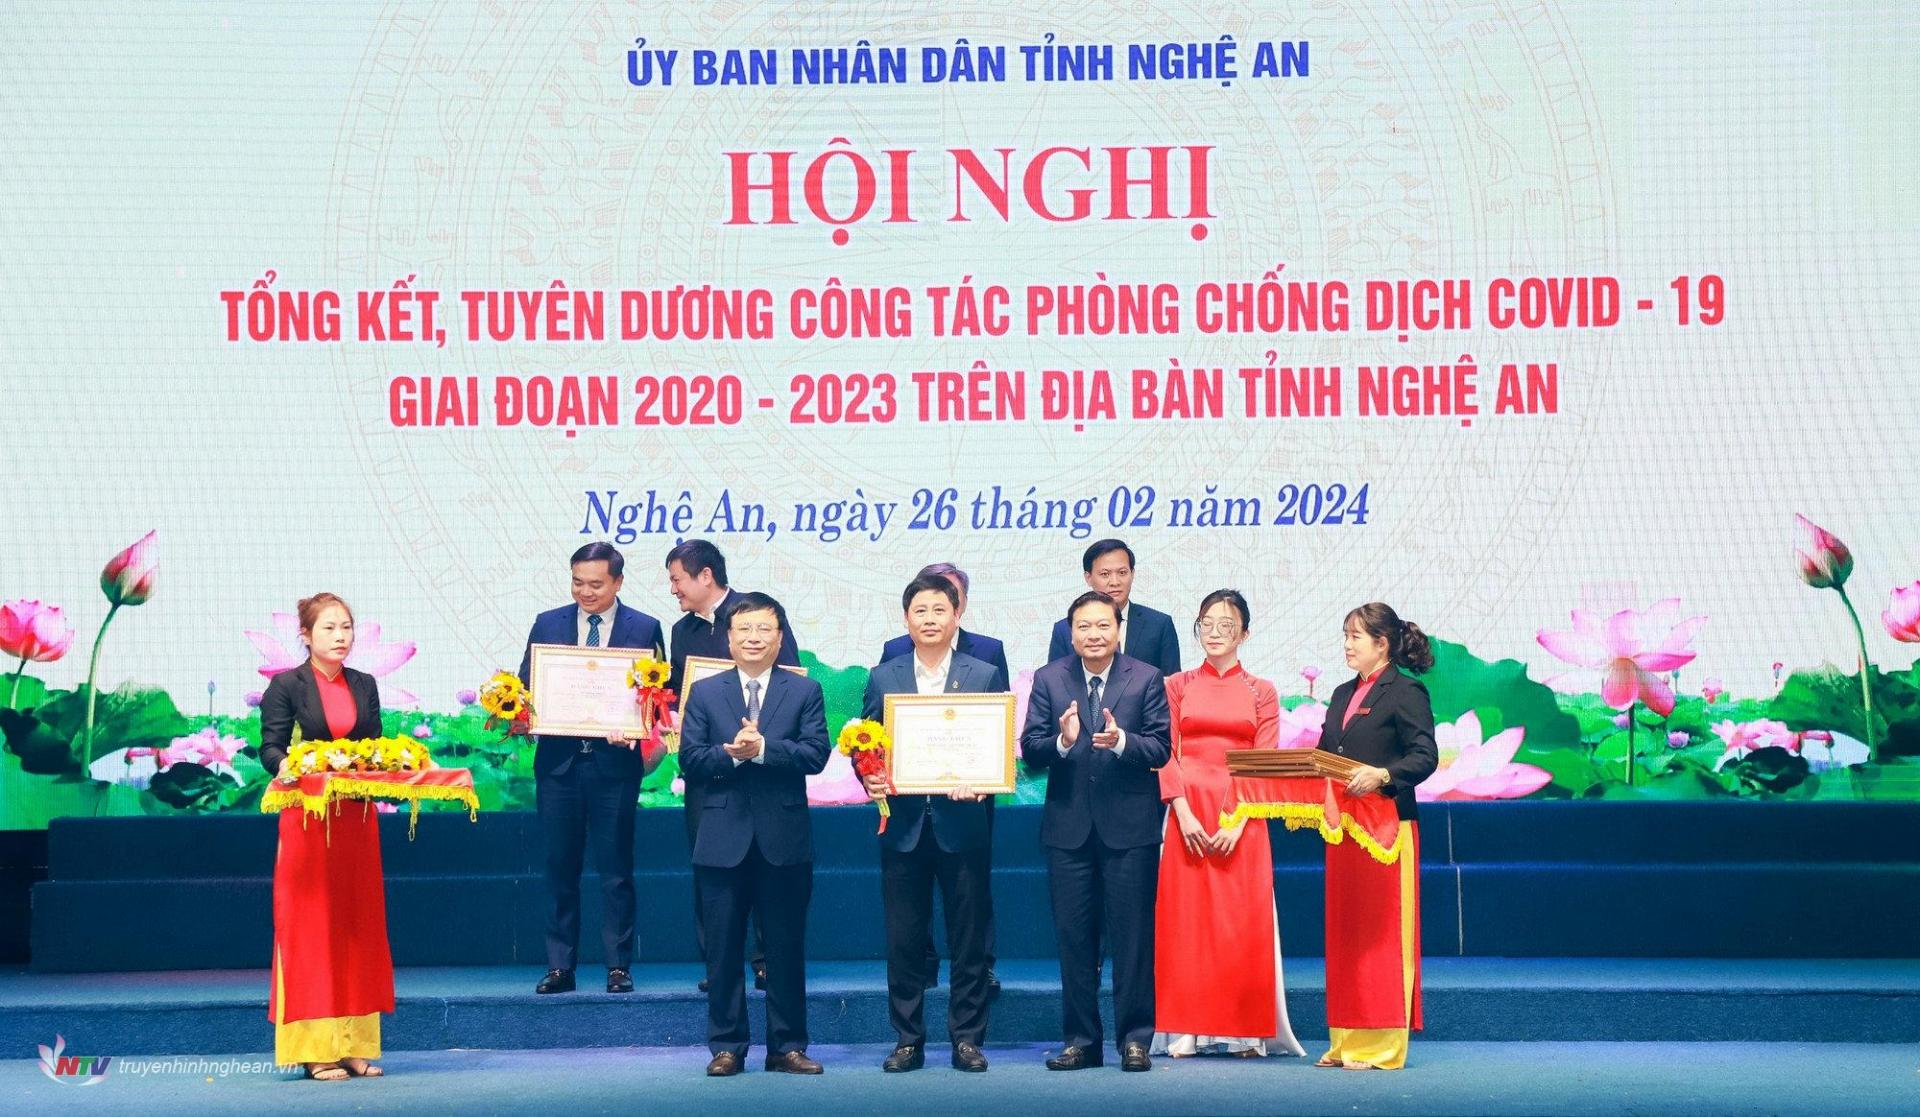 Giám đốc Đài PT-TH Nghệ An, Chủ tịch Hội nhà báo tỉnh Trần Minh Ngọc đón nhận Bằng khen của Chủ tịch UBND tỉnh vì đã có những đóng góp xuất sắc trong công tác phòng, chống dịch Covid-19, giai đoạn 2020-2023.